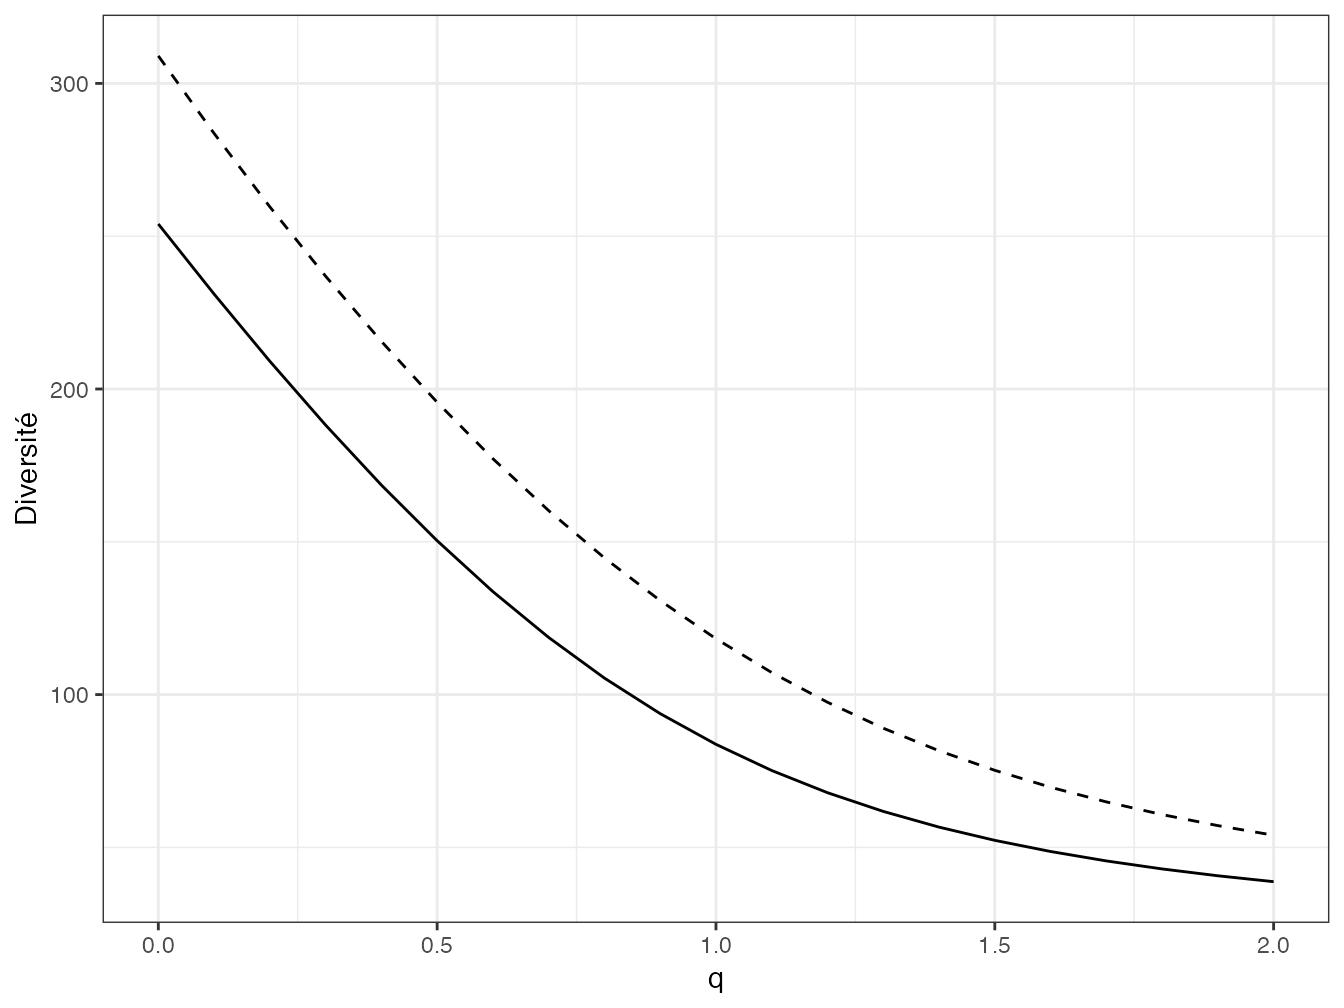 Profil de diversité calculé pour deux parcelles de Paracou (Parcelle 6 : trait plein et Parcelle 18 : trait pointillé). La correction du biais d’estimation est celle de Chao et Jost.